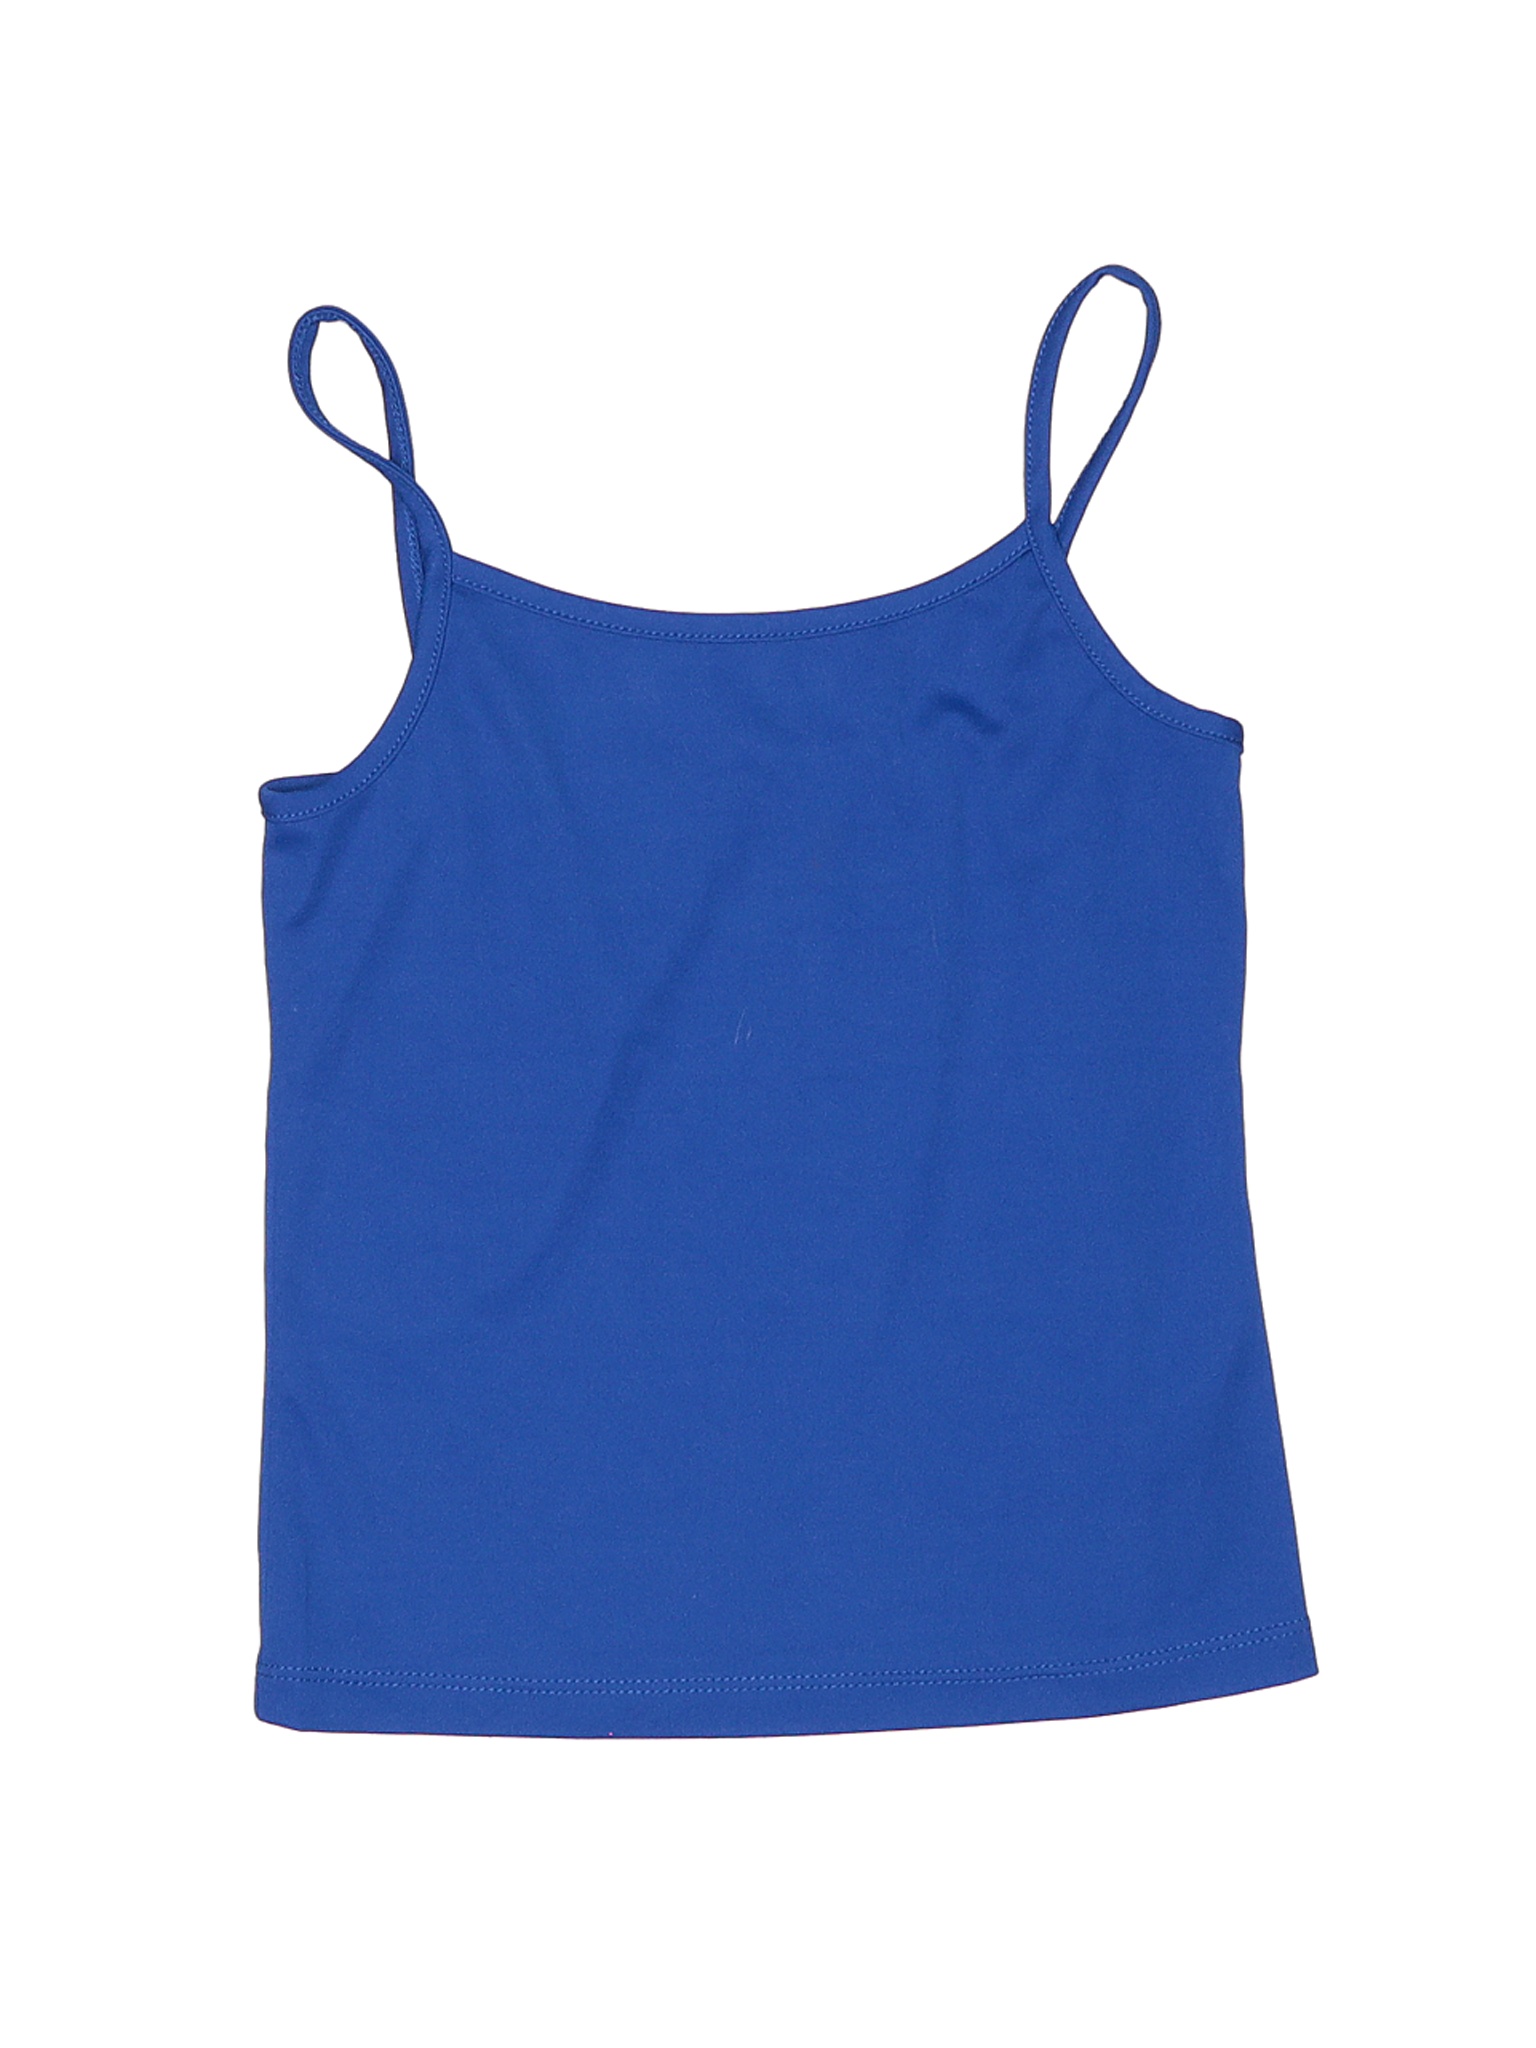 Assorted Brands Girls Blue Tank Top 8 | eBay